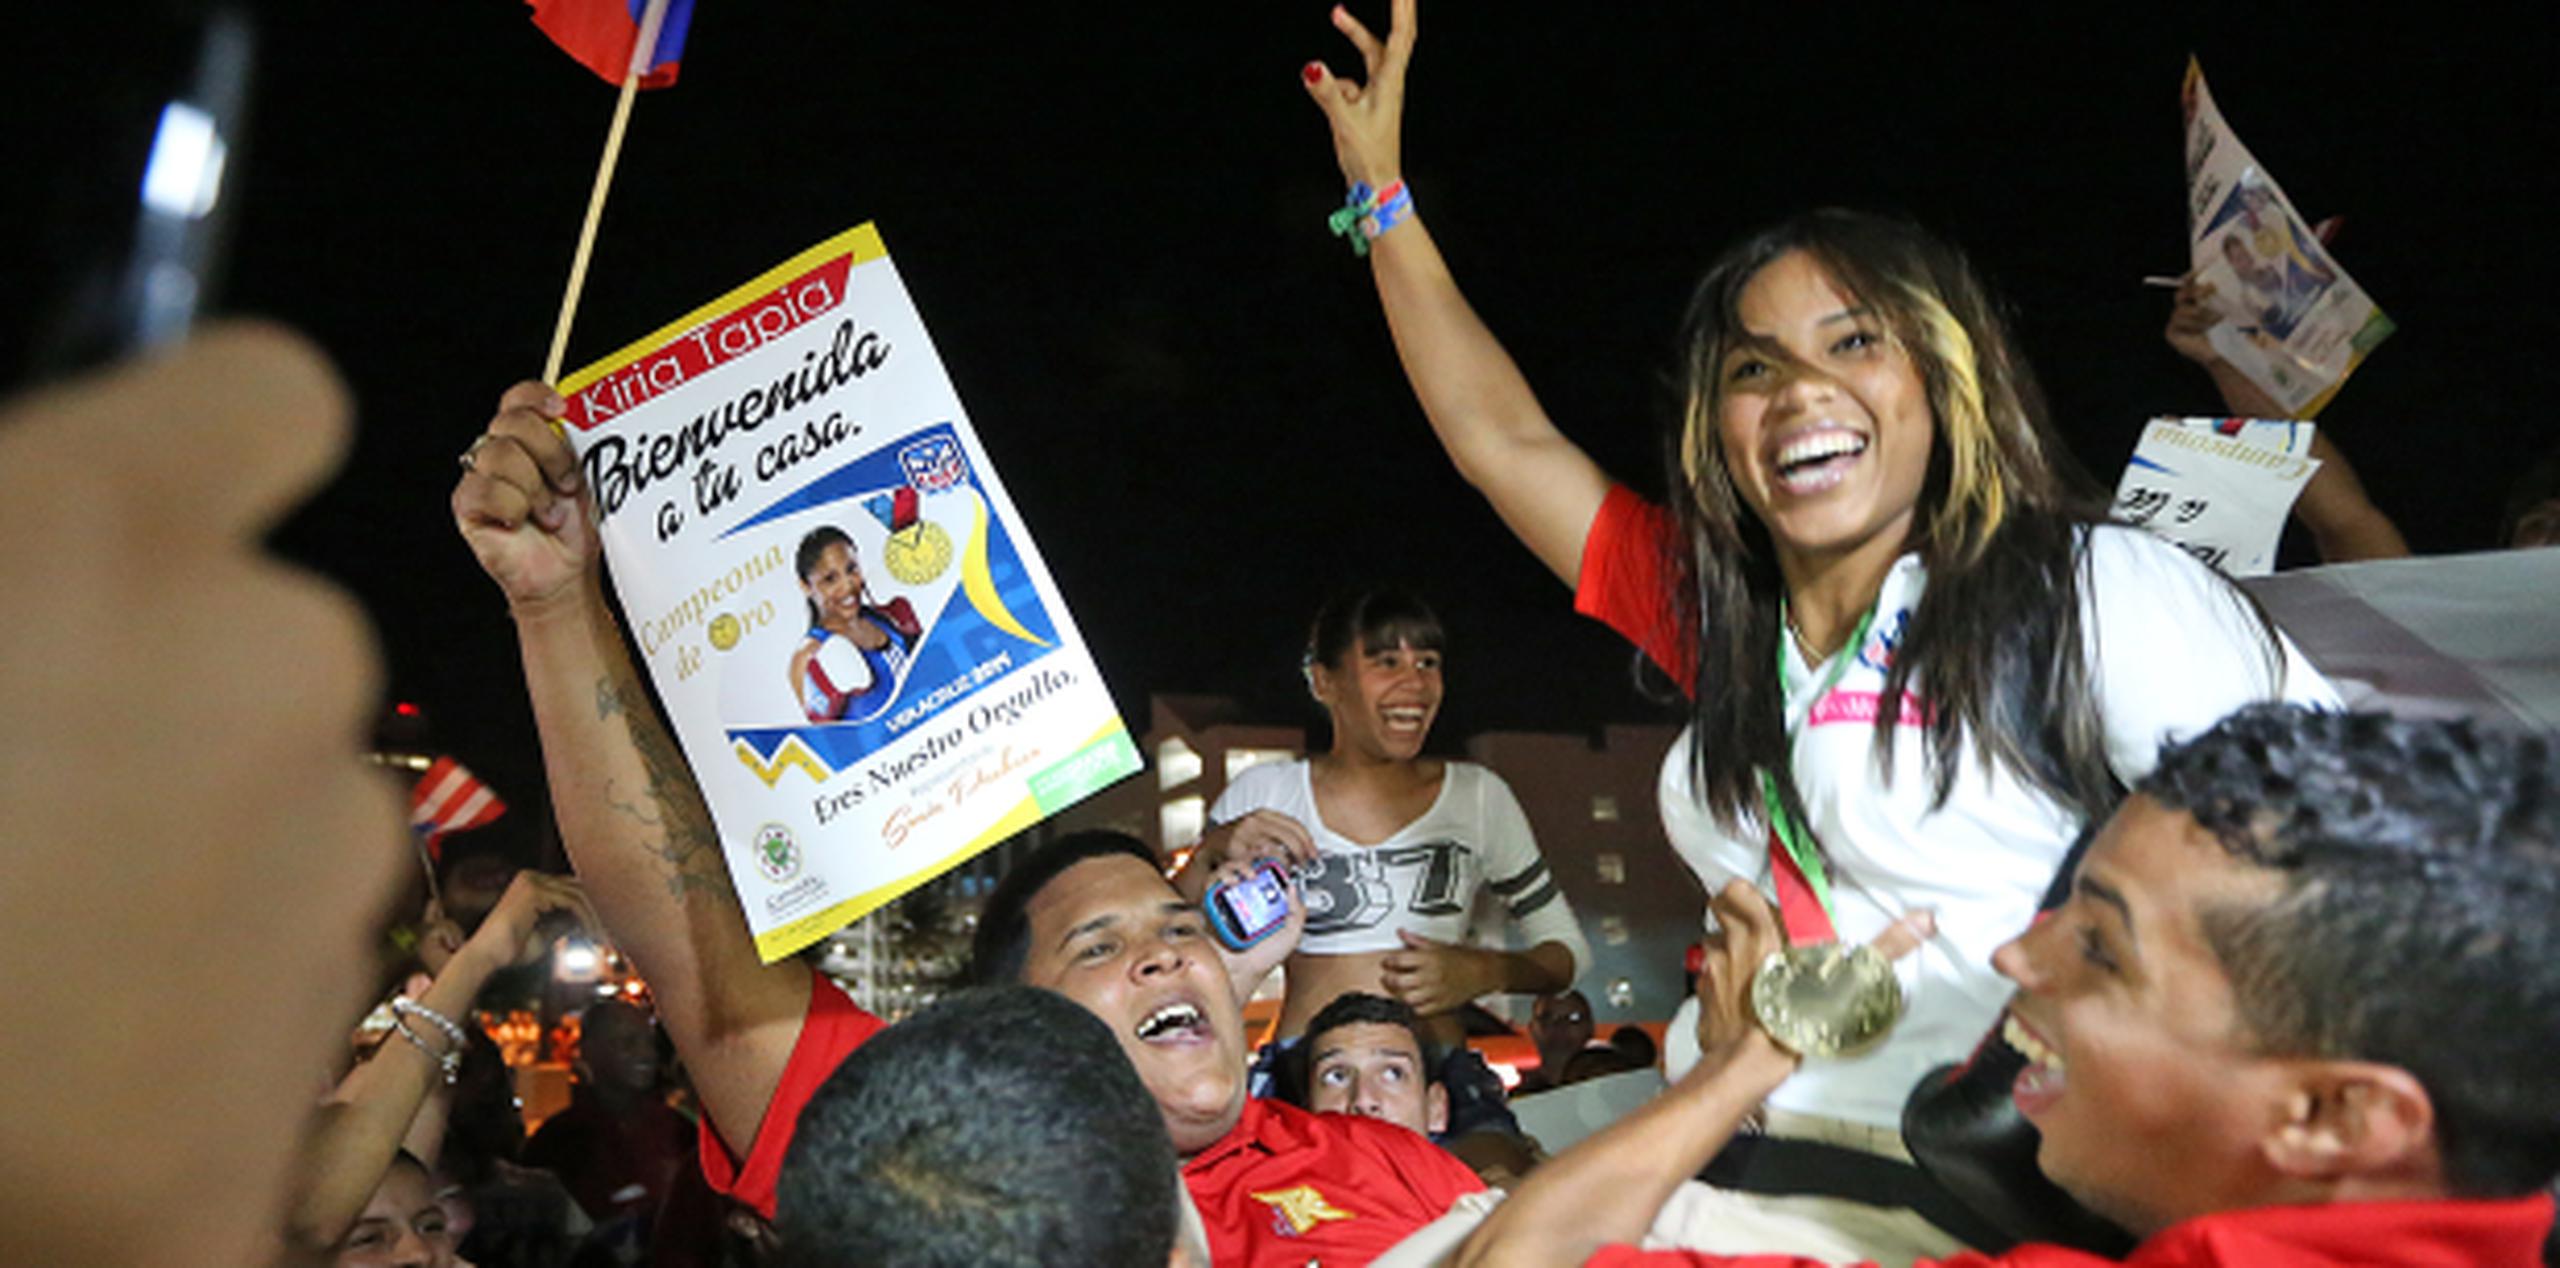 La boxeadora Kiria Tapia cargó con la medalla de oro en Veracruz. (juan.martinez@gfrmedia.com)